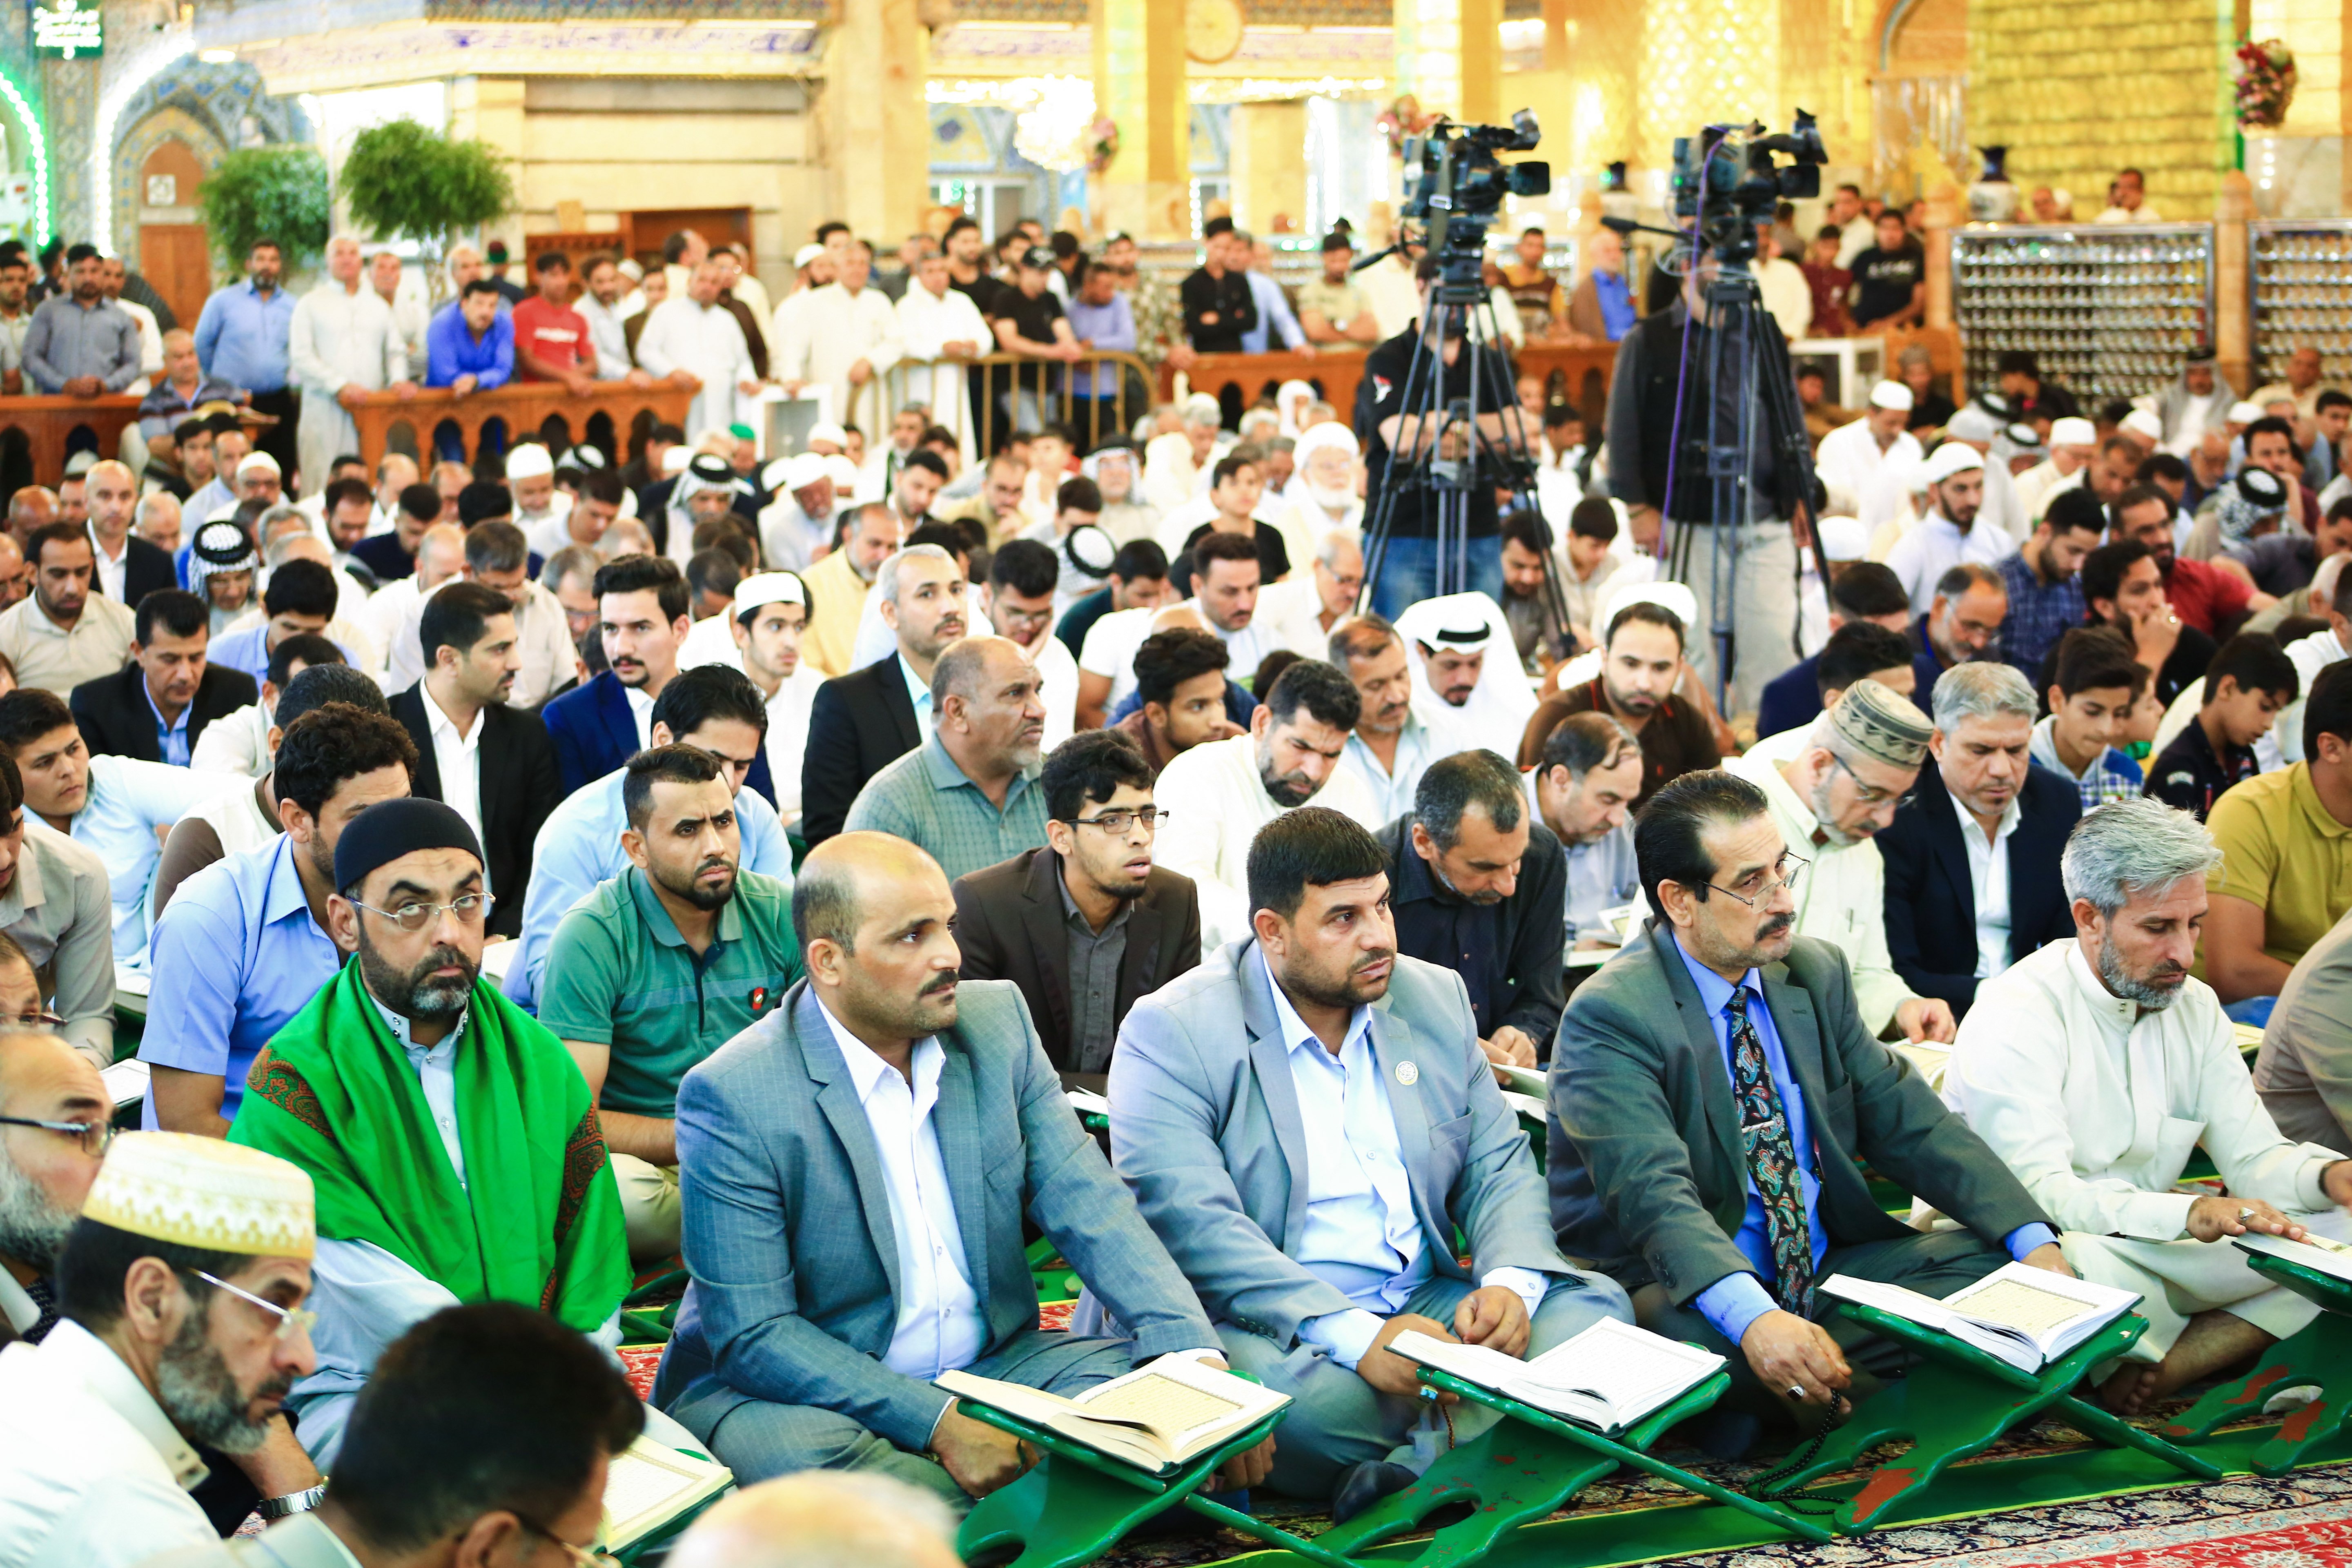 وسط حضور كبير معهد القرآن الكريم يُحيّ أمسية قرآنية ضمن فعاليات مهرجان ربيع الشهادة العالمي الرابع عشر